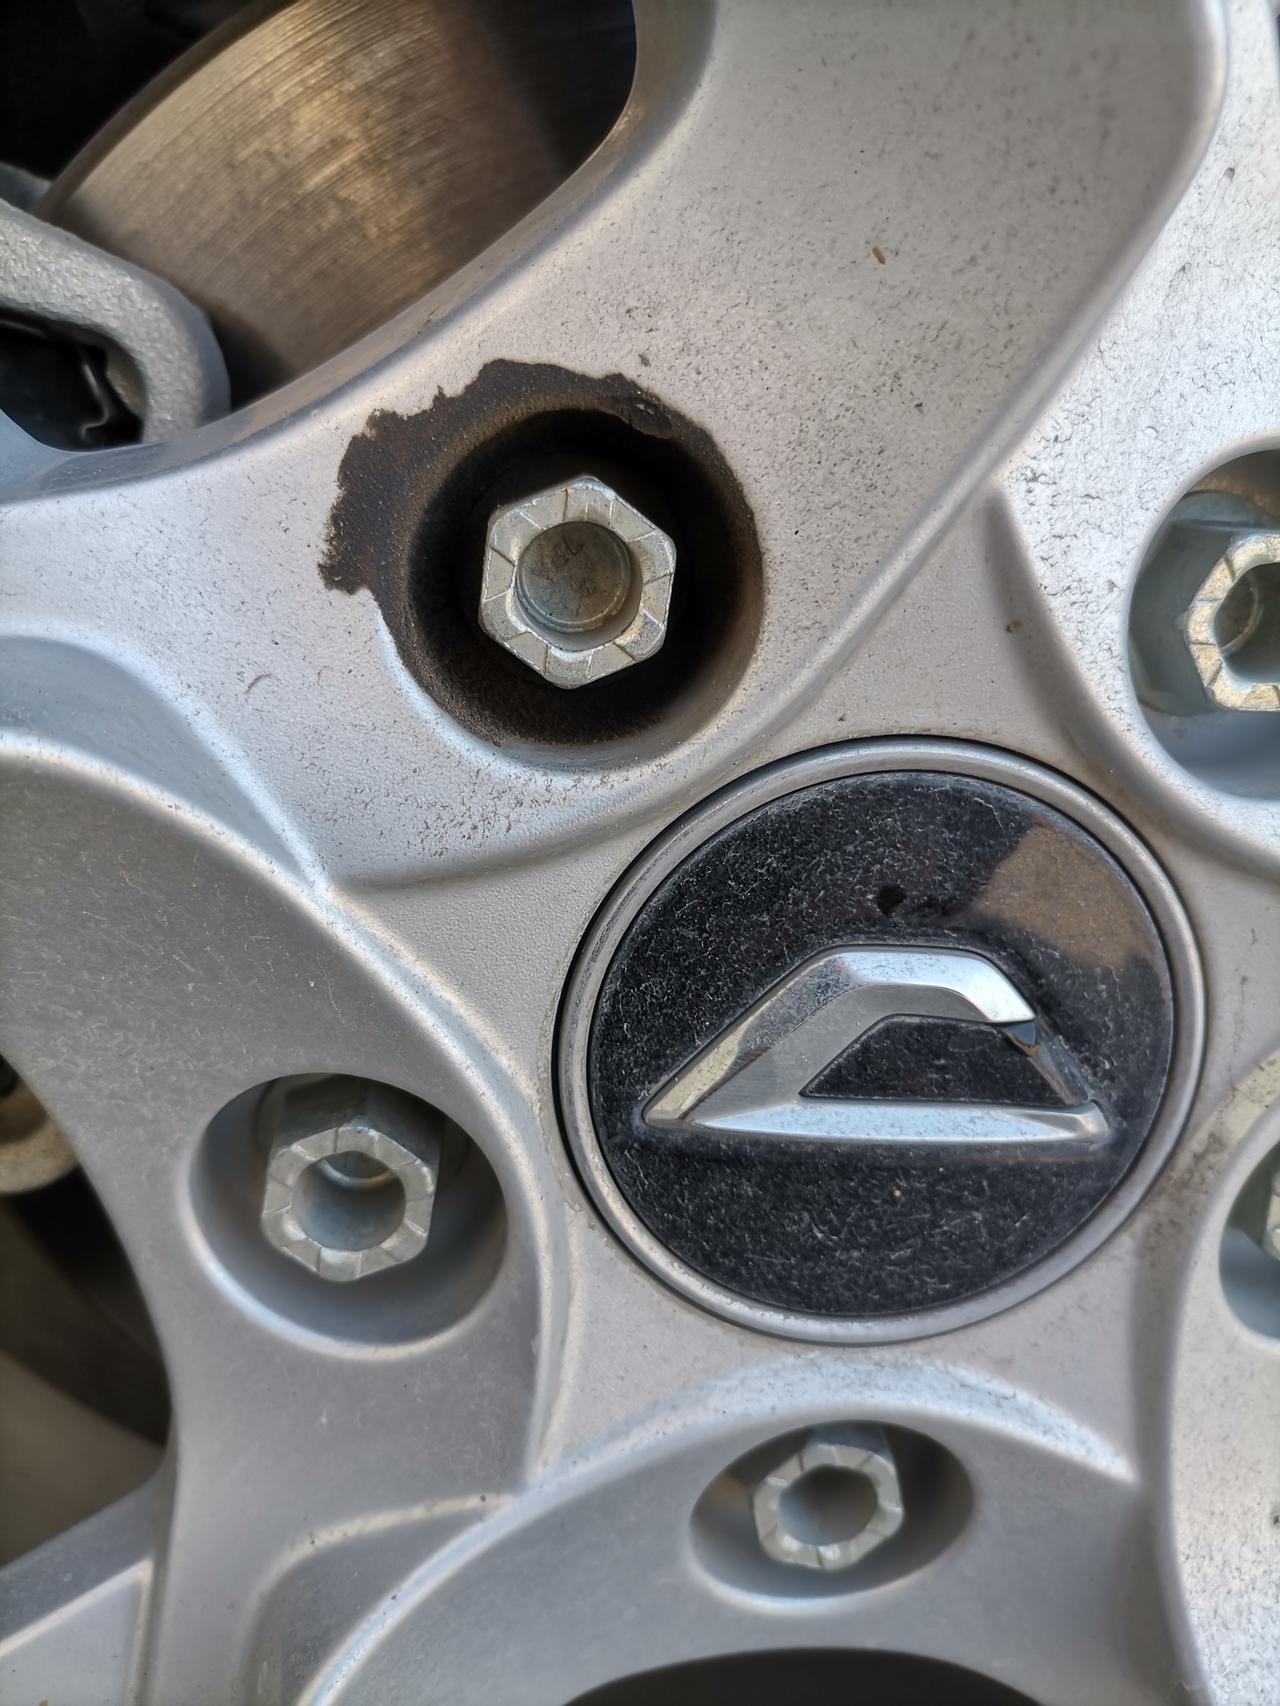 捷达VS5 ，一个螺丝孔漏油，是不是哪里坏了。新车不到一年